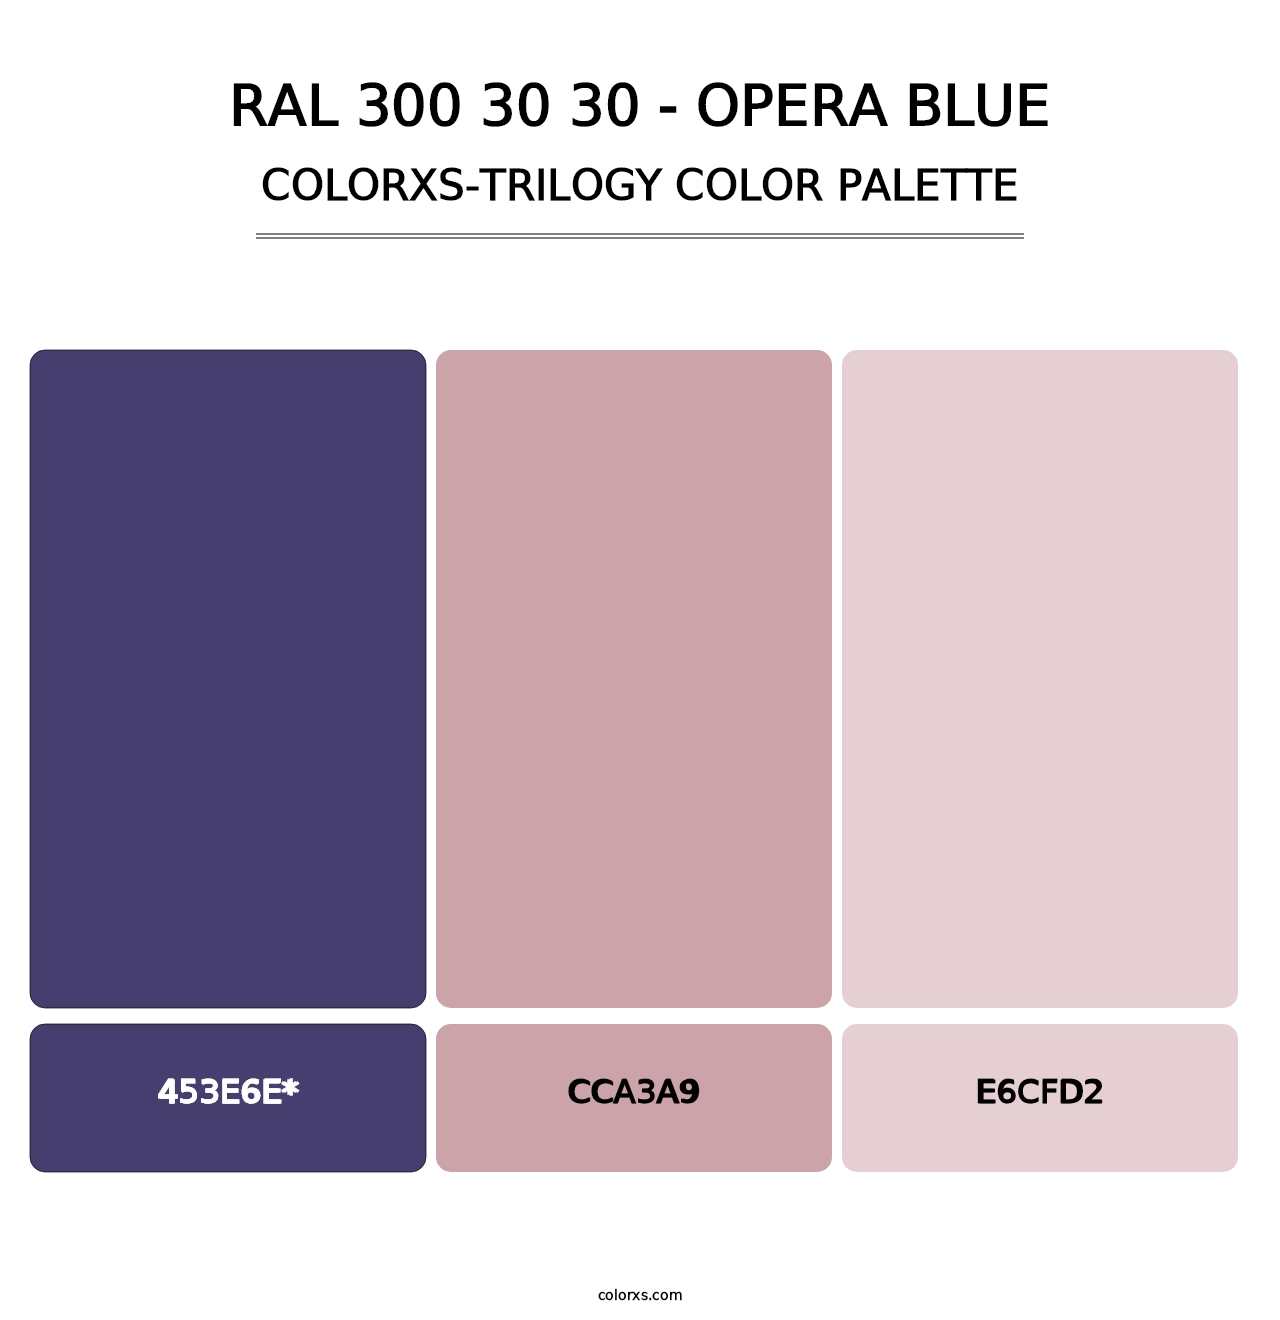 RAL 300 30 30 - Opera Blue - Colorxs Trilogy Palette